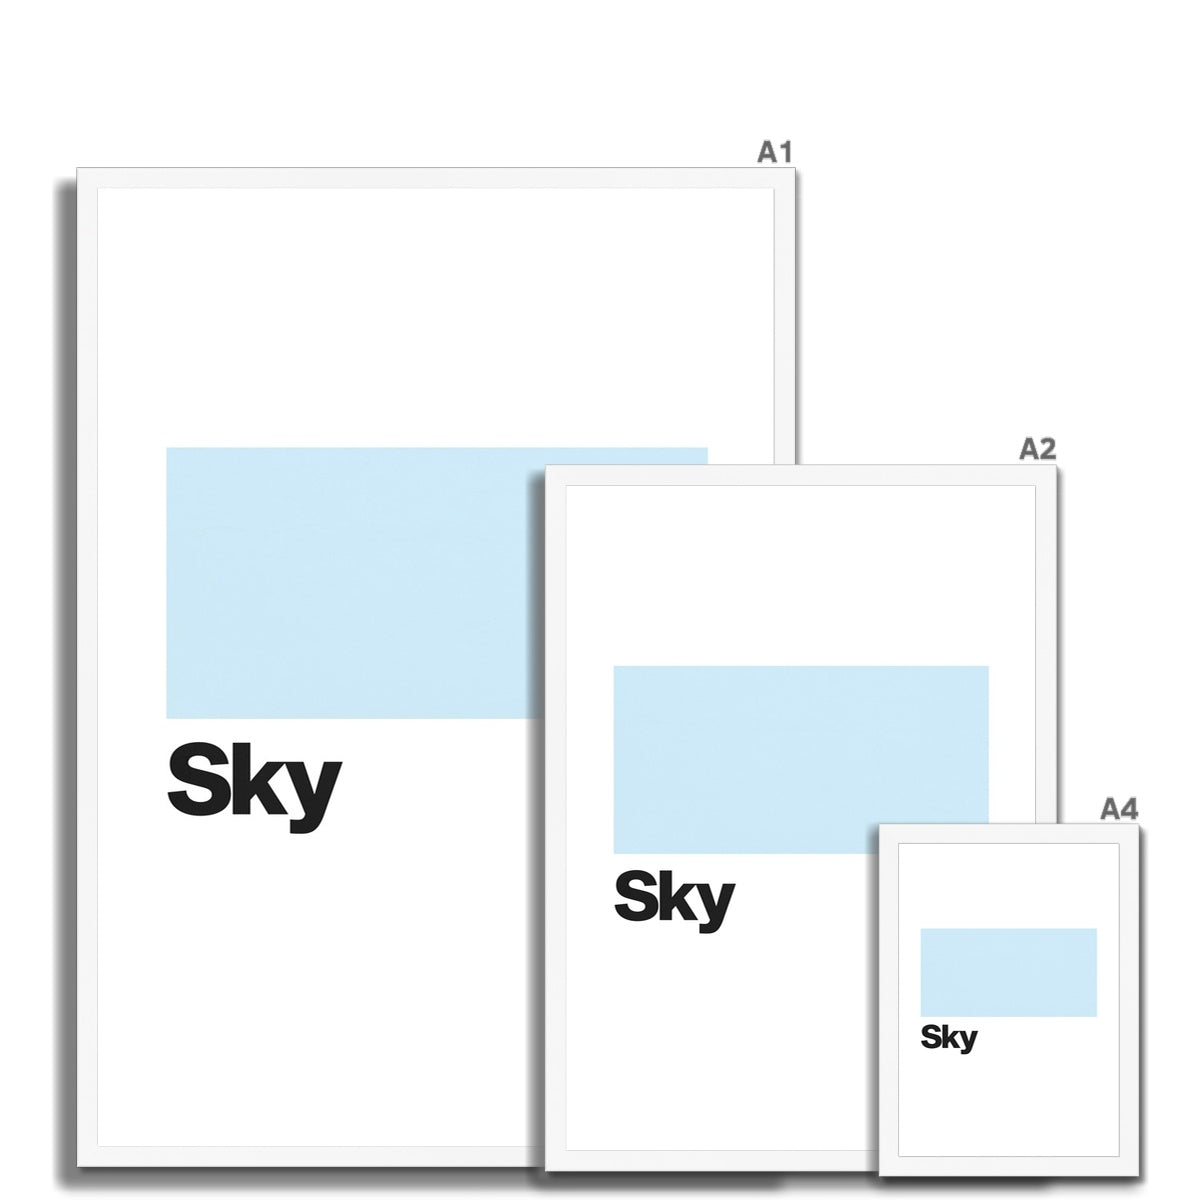 Sky Blue Framed Print